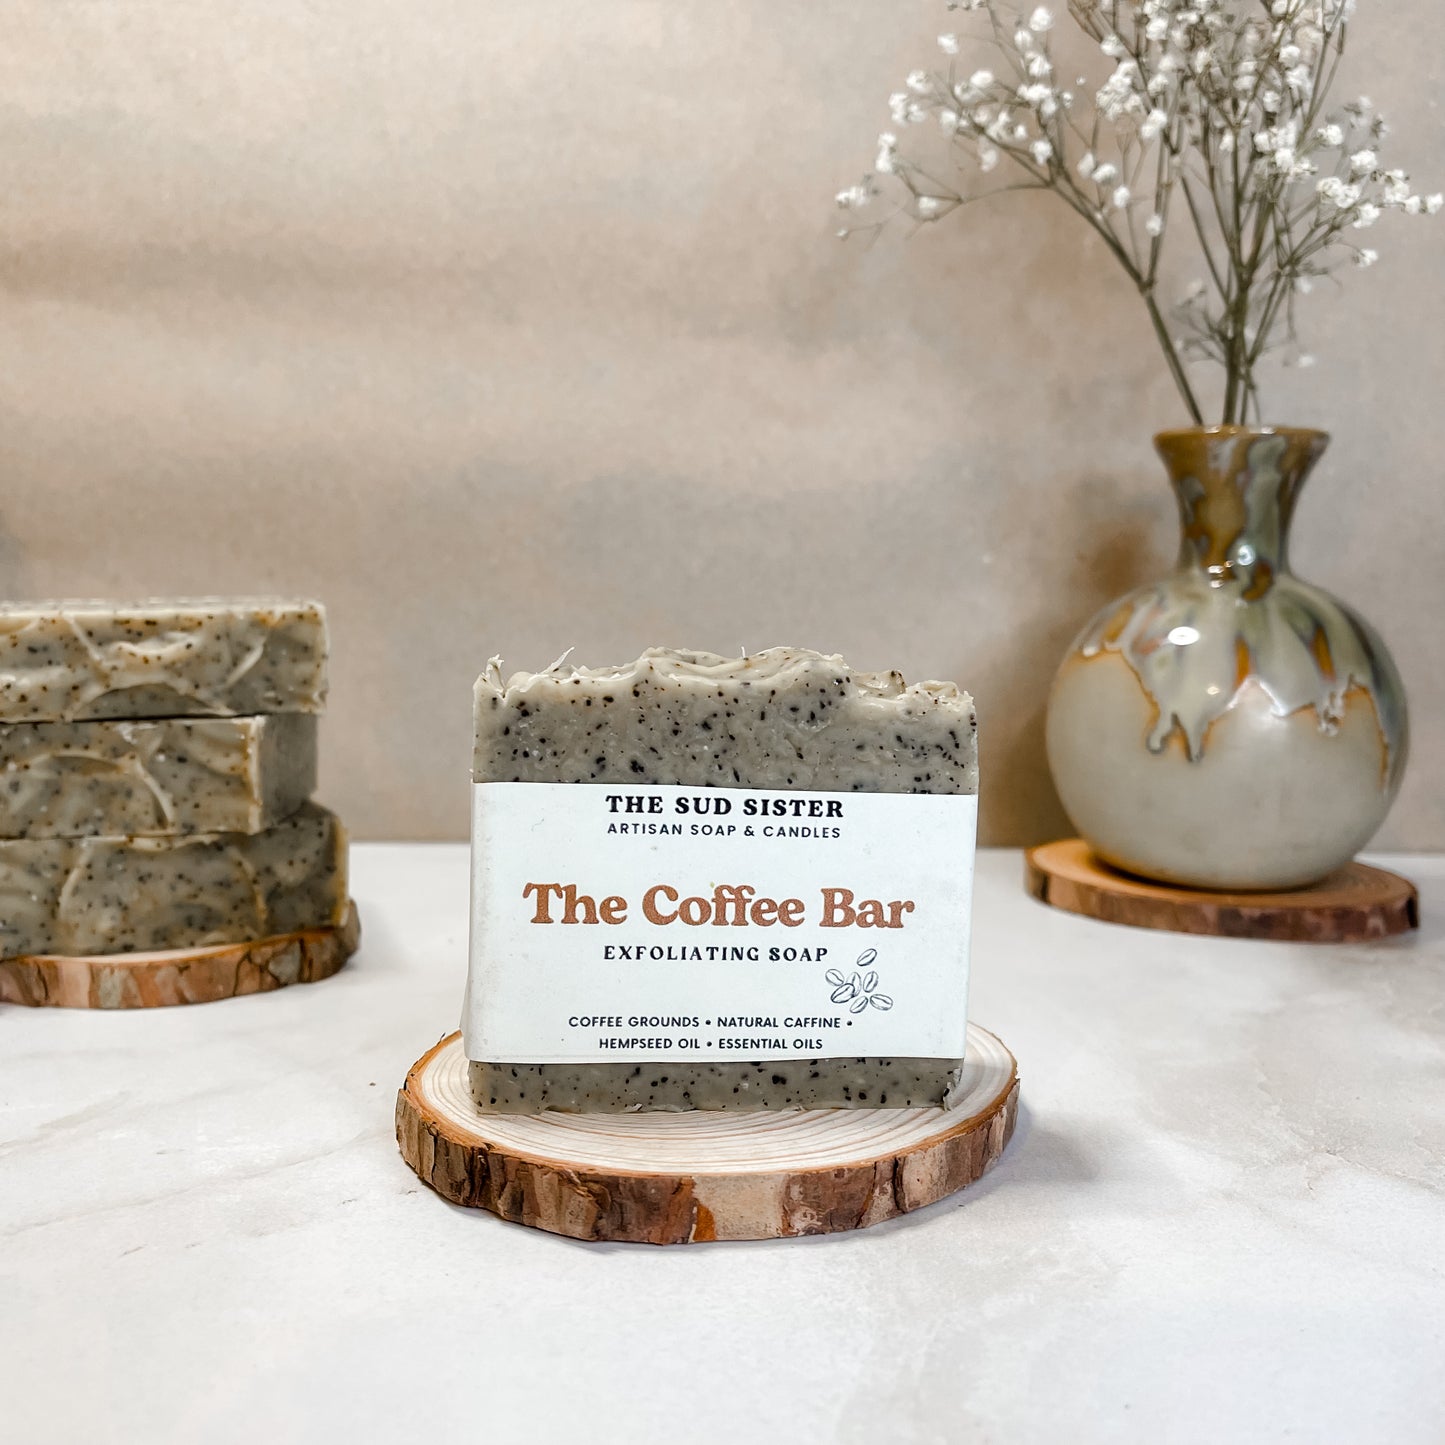 The Coffee Bar | exfoliation bar